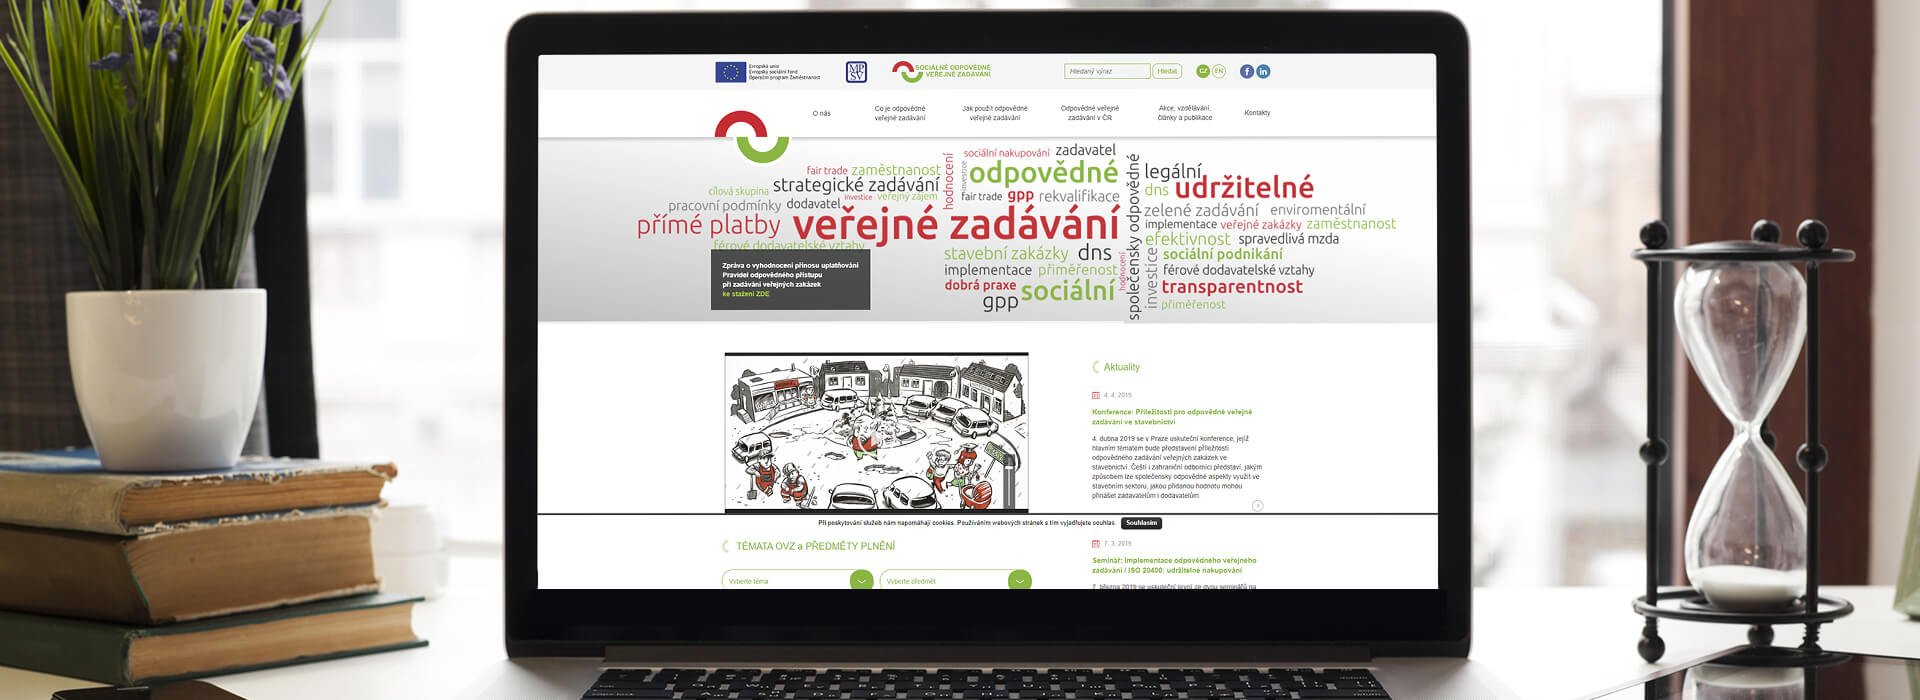 Webové stránky Ministerstva práce a sociálních věcí na monitoru